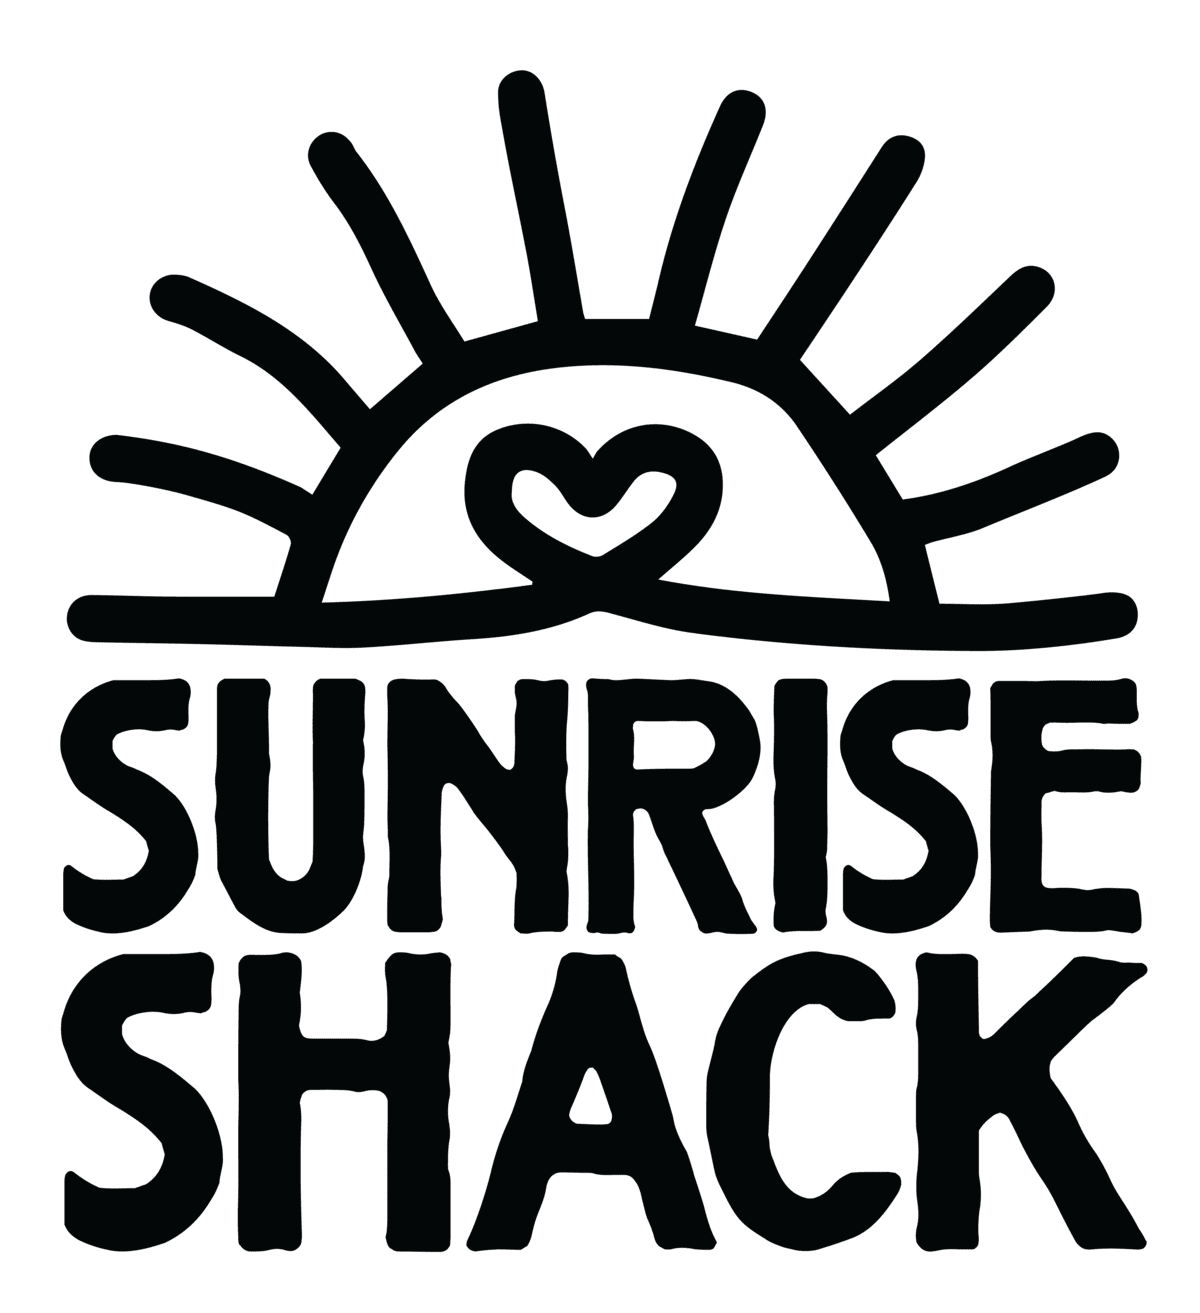 The Sunrise Shack Secondary Logo